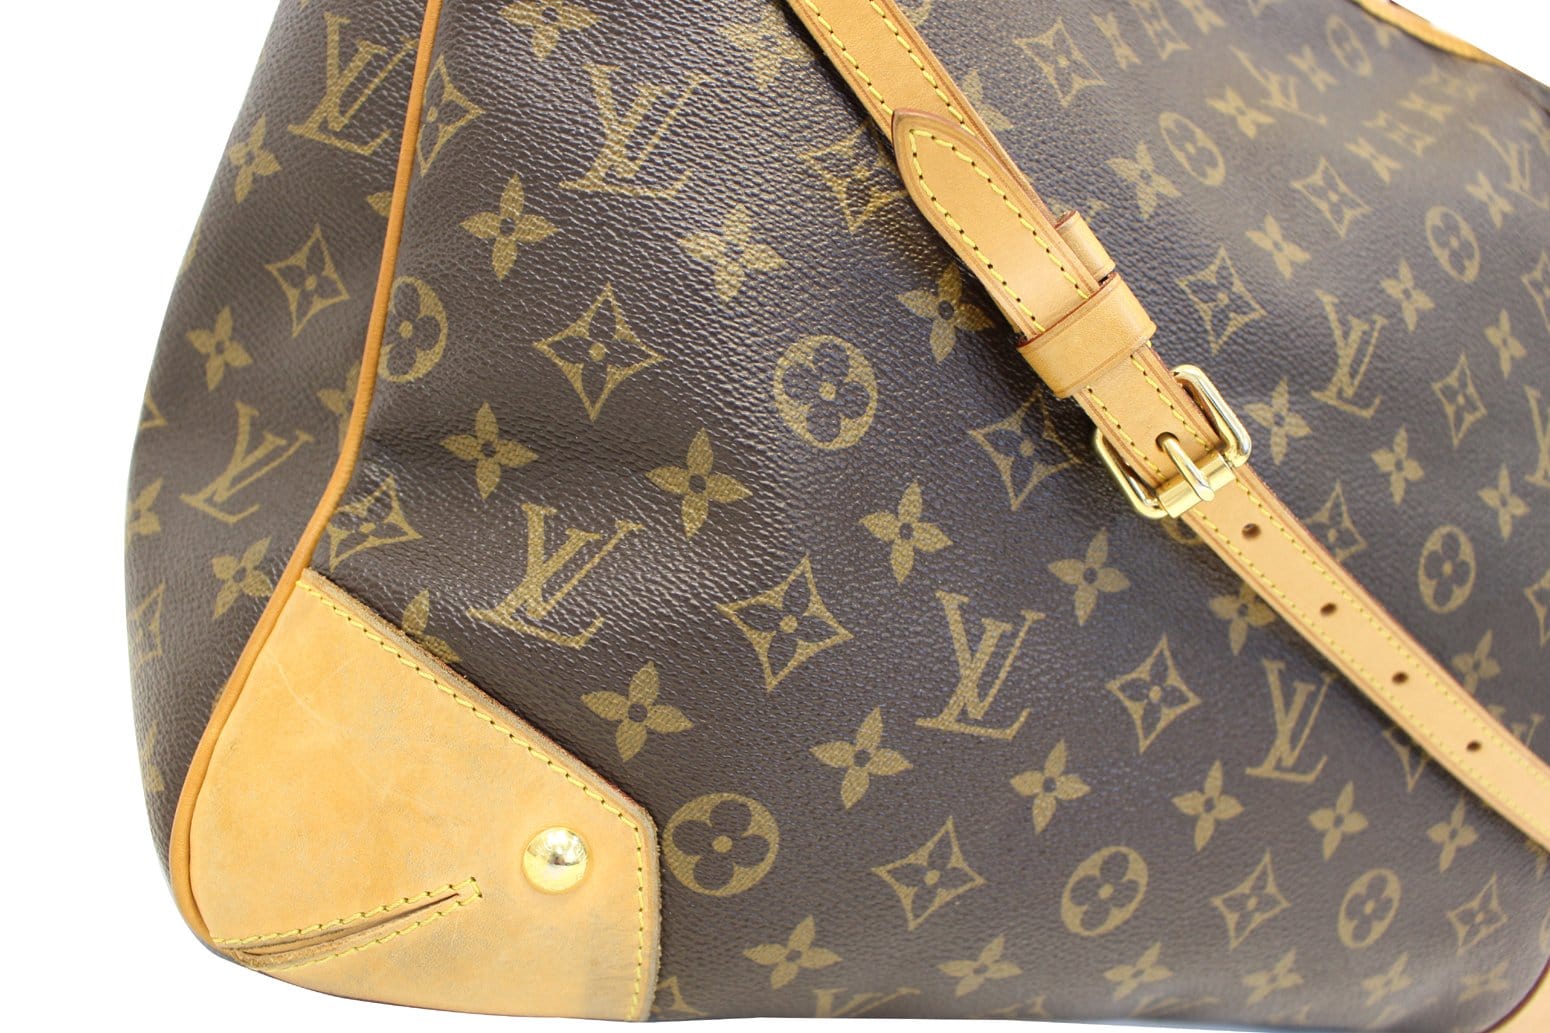 Louis Vuitton Estrela Leather Handbag